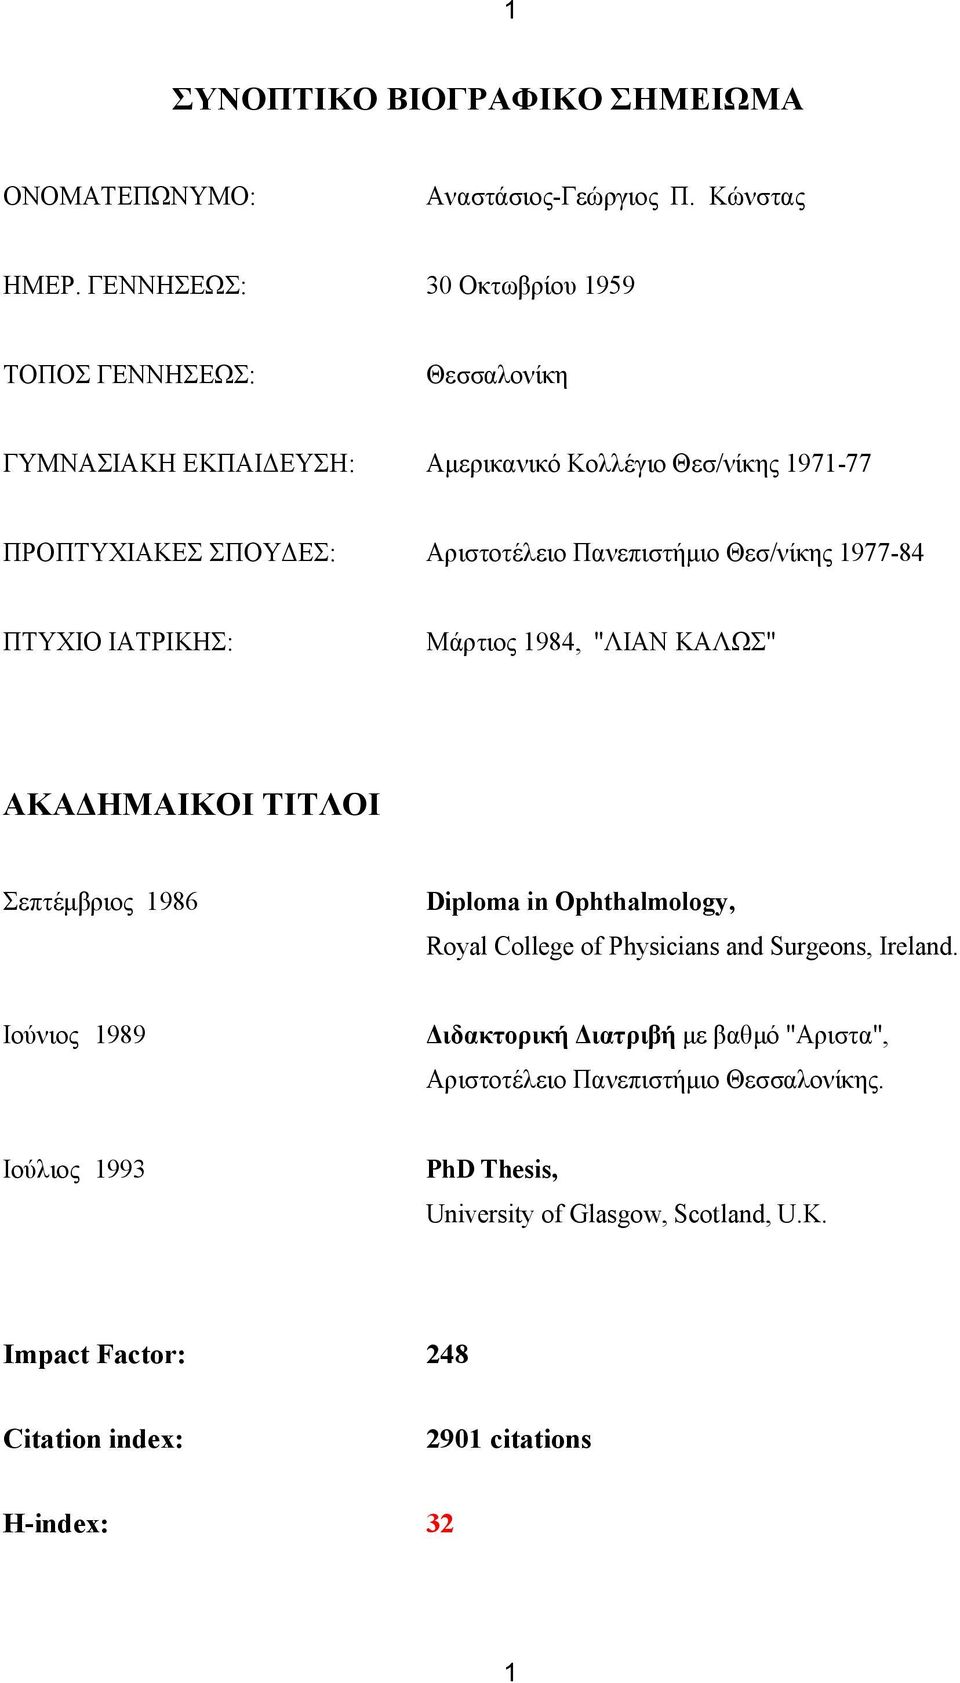 Πανεπιστήμιο Θεσ/νίκης 1977-84 ΠΤΥΧΙΟ ΙΑΤΡΙΚΗΣ: Μάρτιος 1984, "ΛΙΑΝ ΚΑΛΩΣ" ΑΚΑΔΗΜΑΙΚΟΙ ΤΙΤΛΟΙ Σεπτέμβριος 1986 Diploma in Ophthalmology, Royal College of